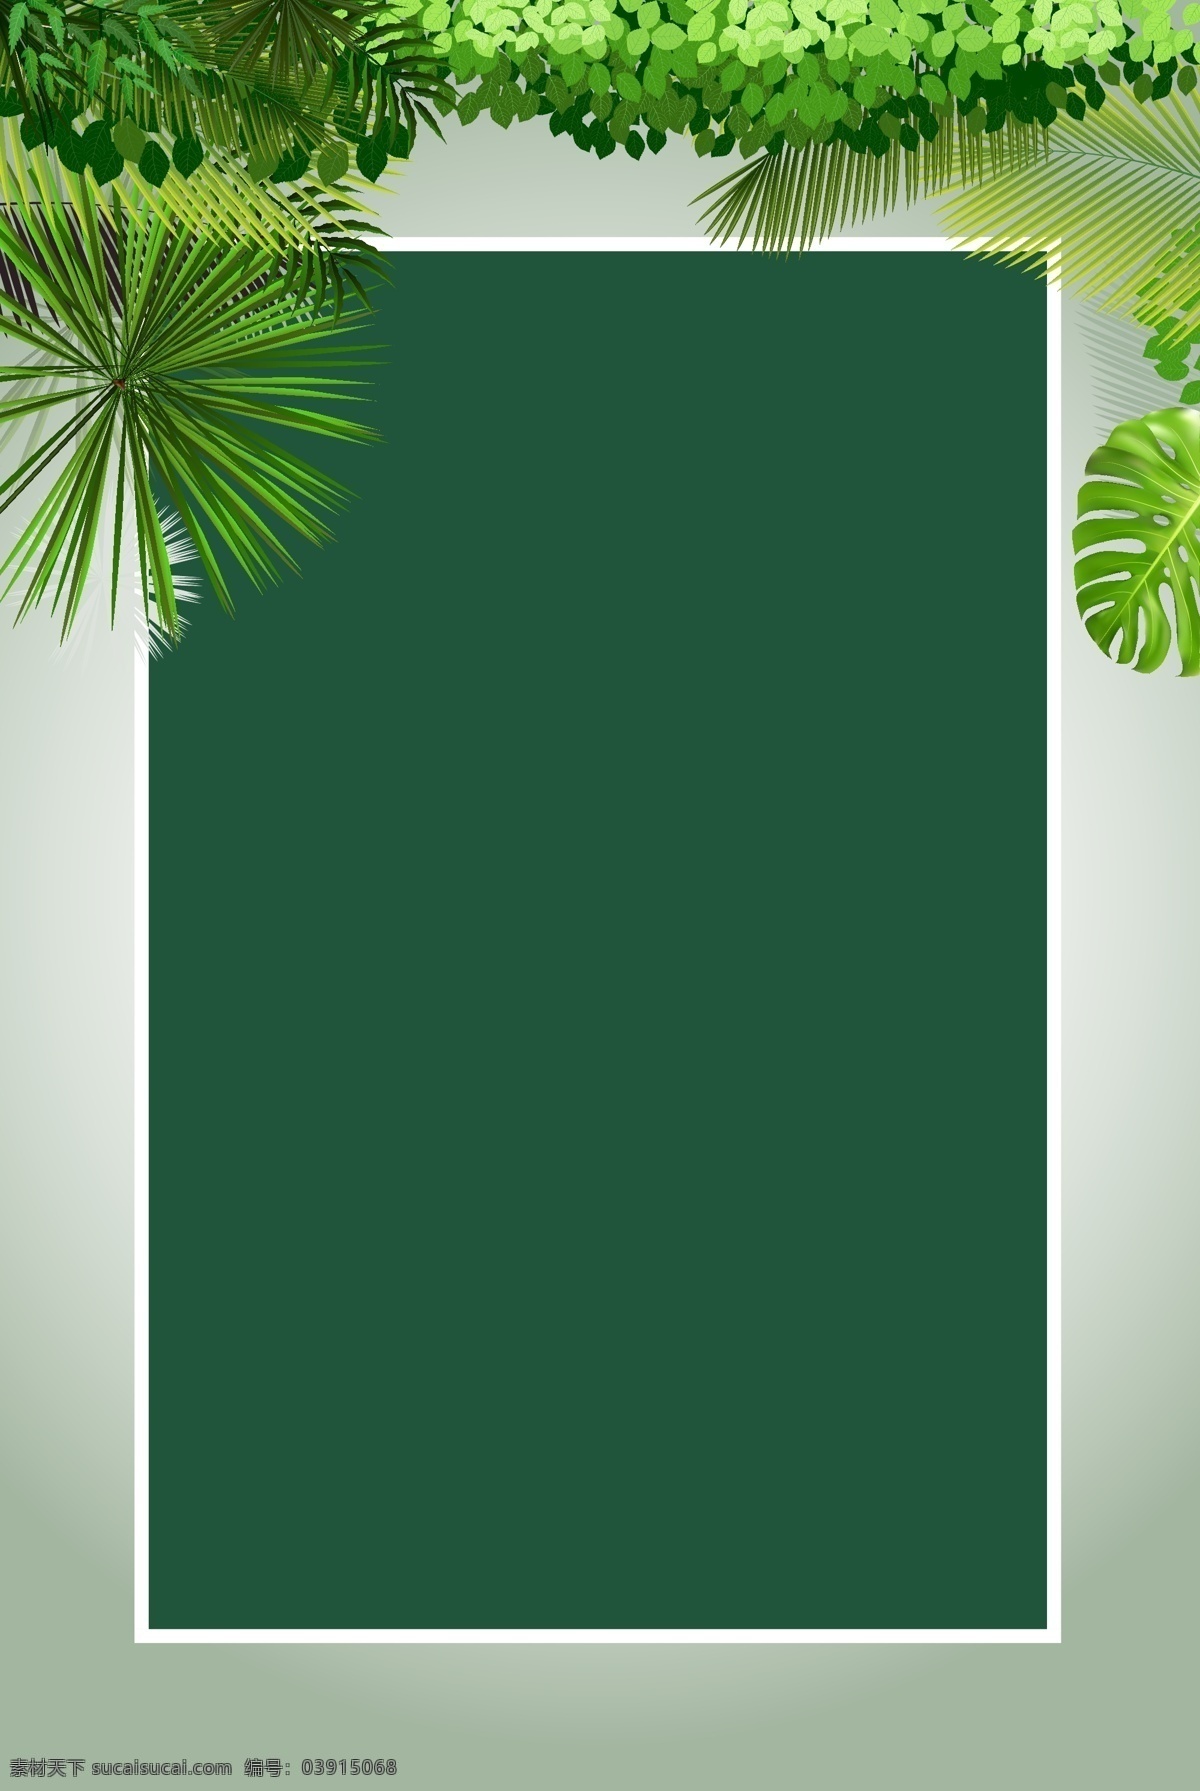 矢量 文艺 清新 绿叶 清爽 背景 夏日 夏季 绿色 方框 夏天 热带植物 绿植 水彩 泼墨 手绘 海报